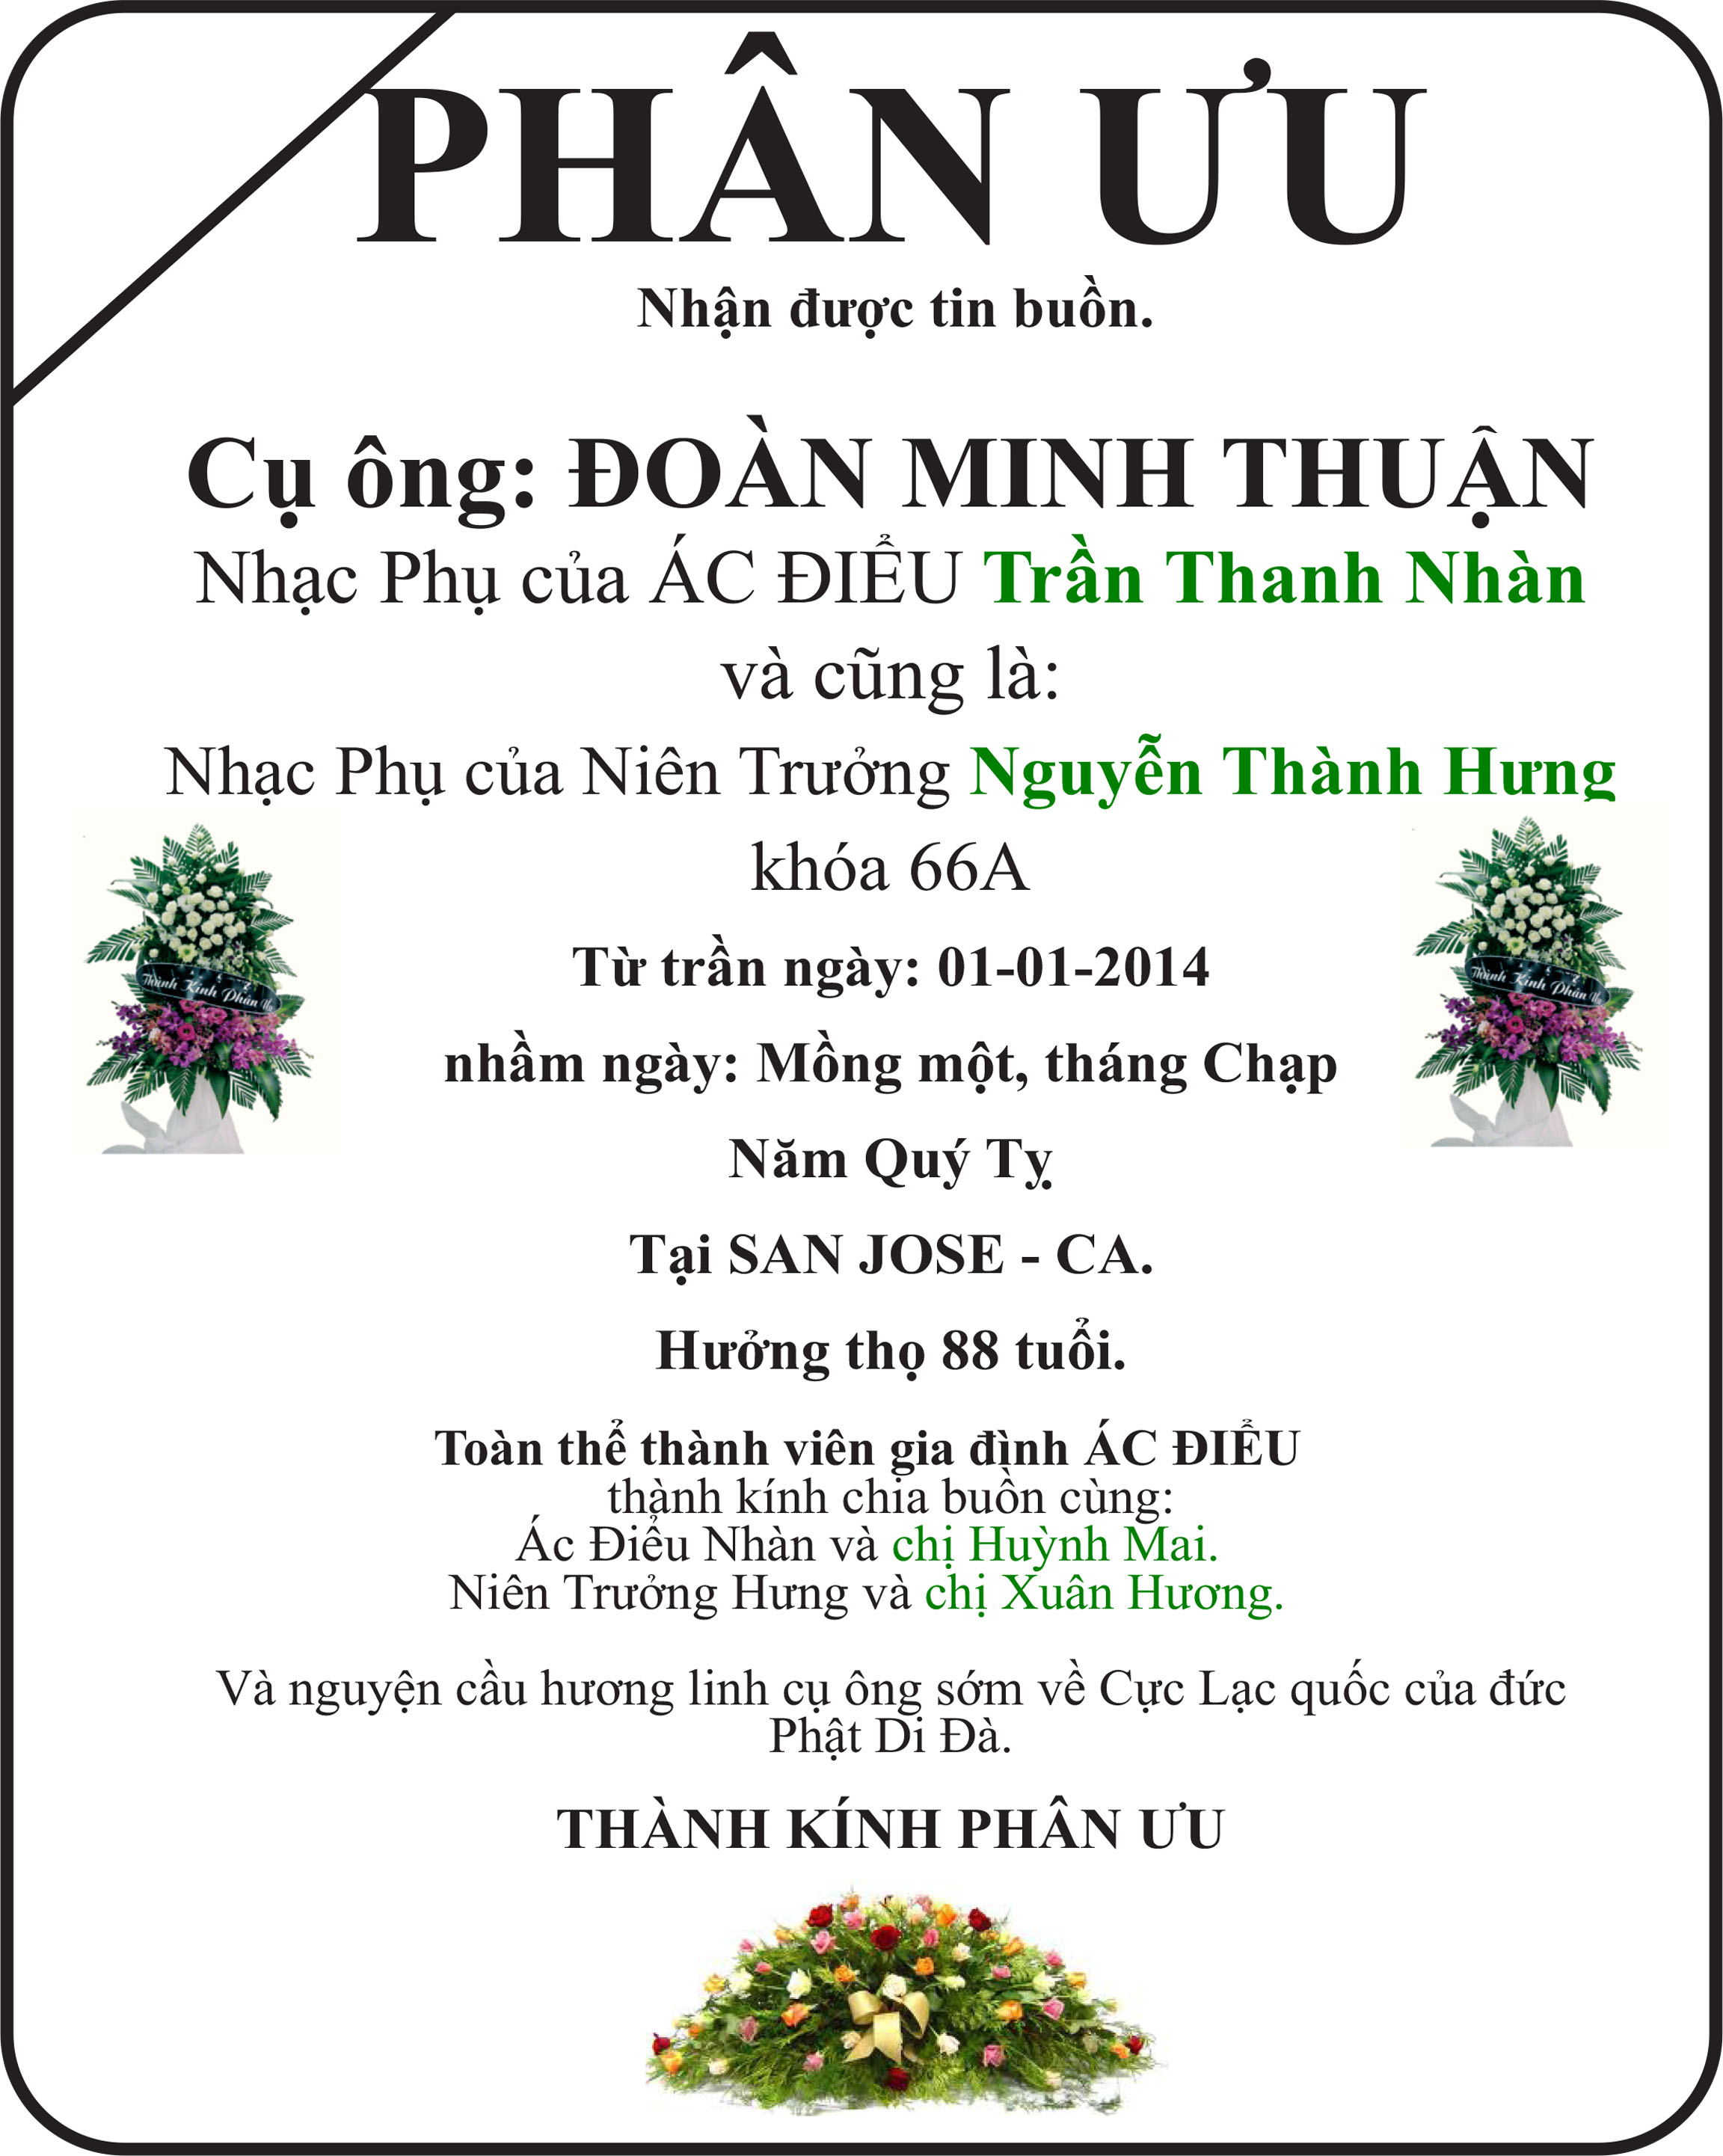 Doan Minh Thuan